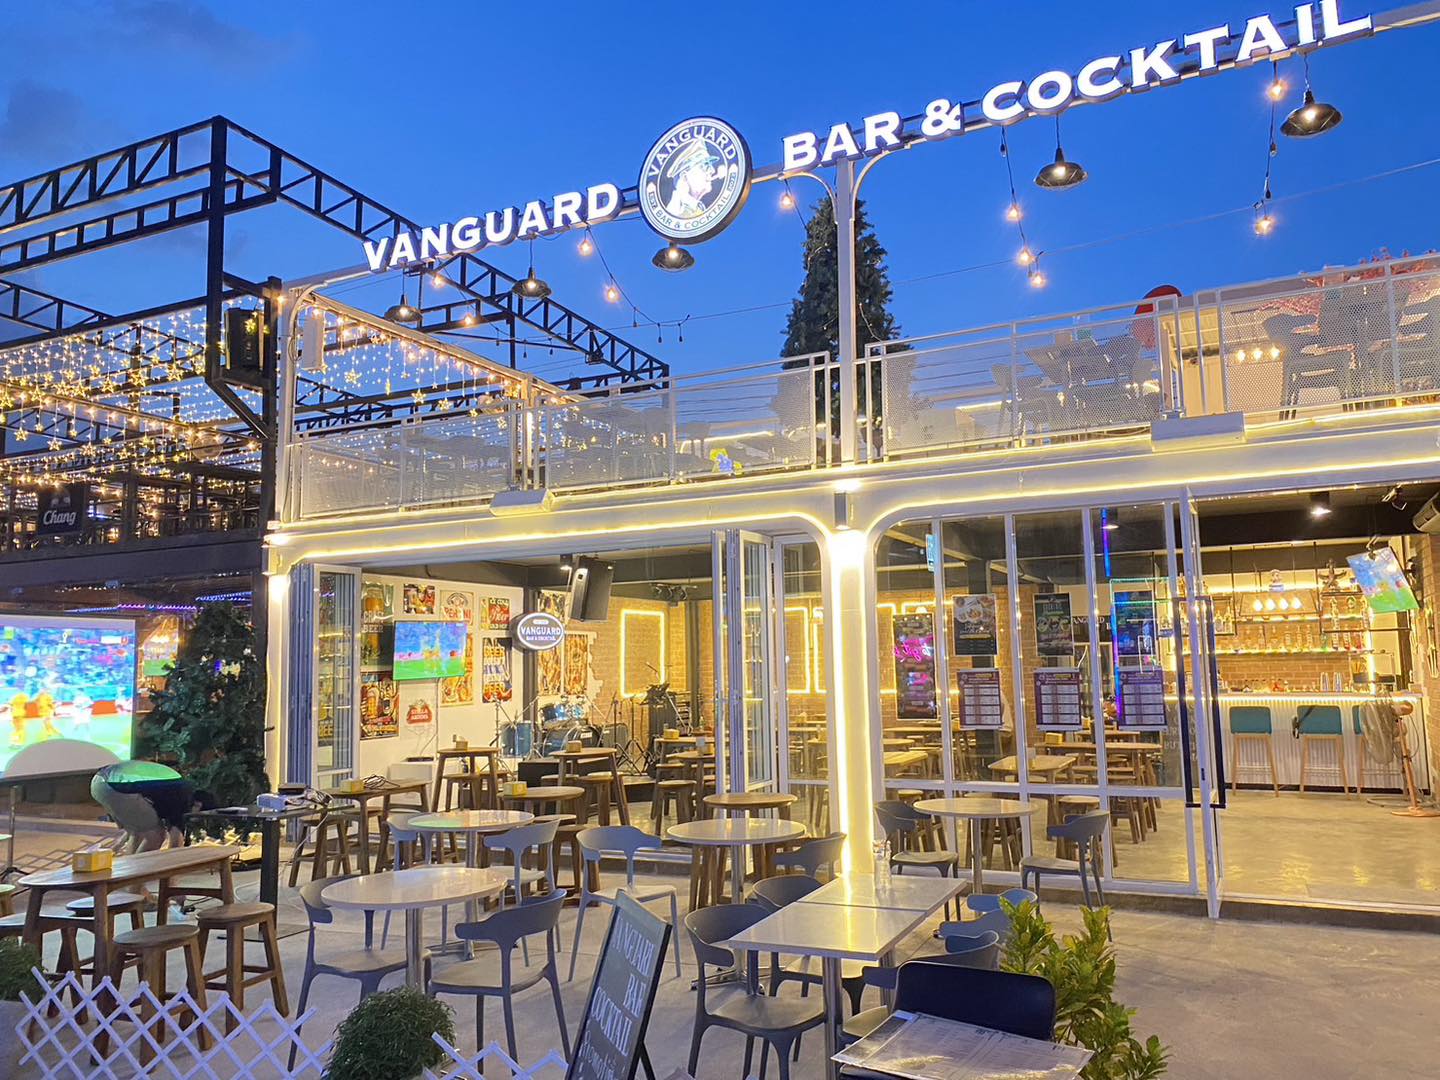 Vanguard Bar&Cocktail (Vanguard Bar&Cocktail) : กรุงเทพมหานคร (Bangkok)